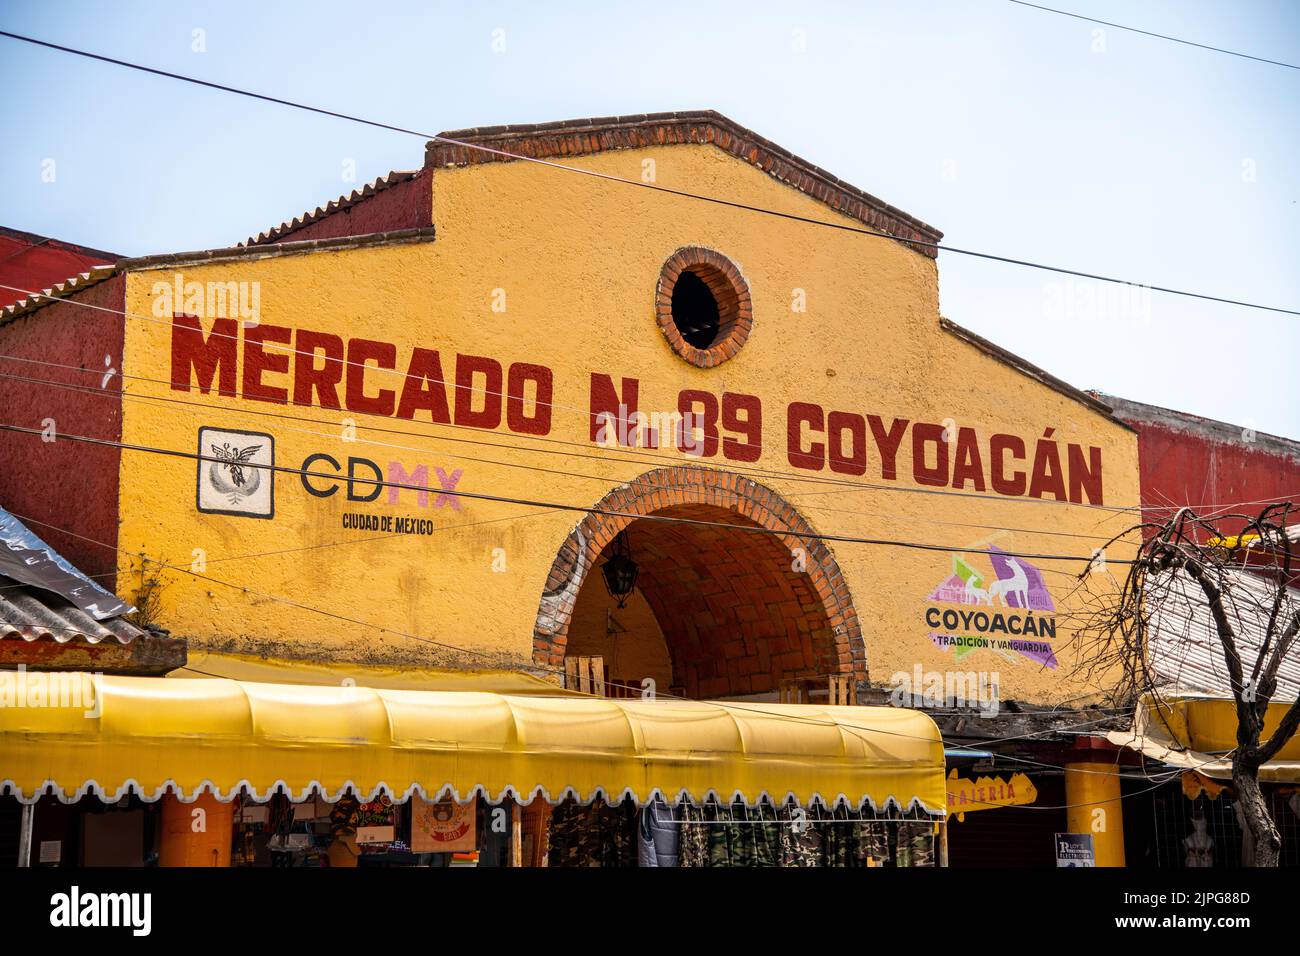 The exterior of Mercado Coyoacan market in Coyoacan, Mexico City, Mexico Stock Photo